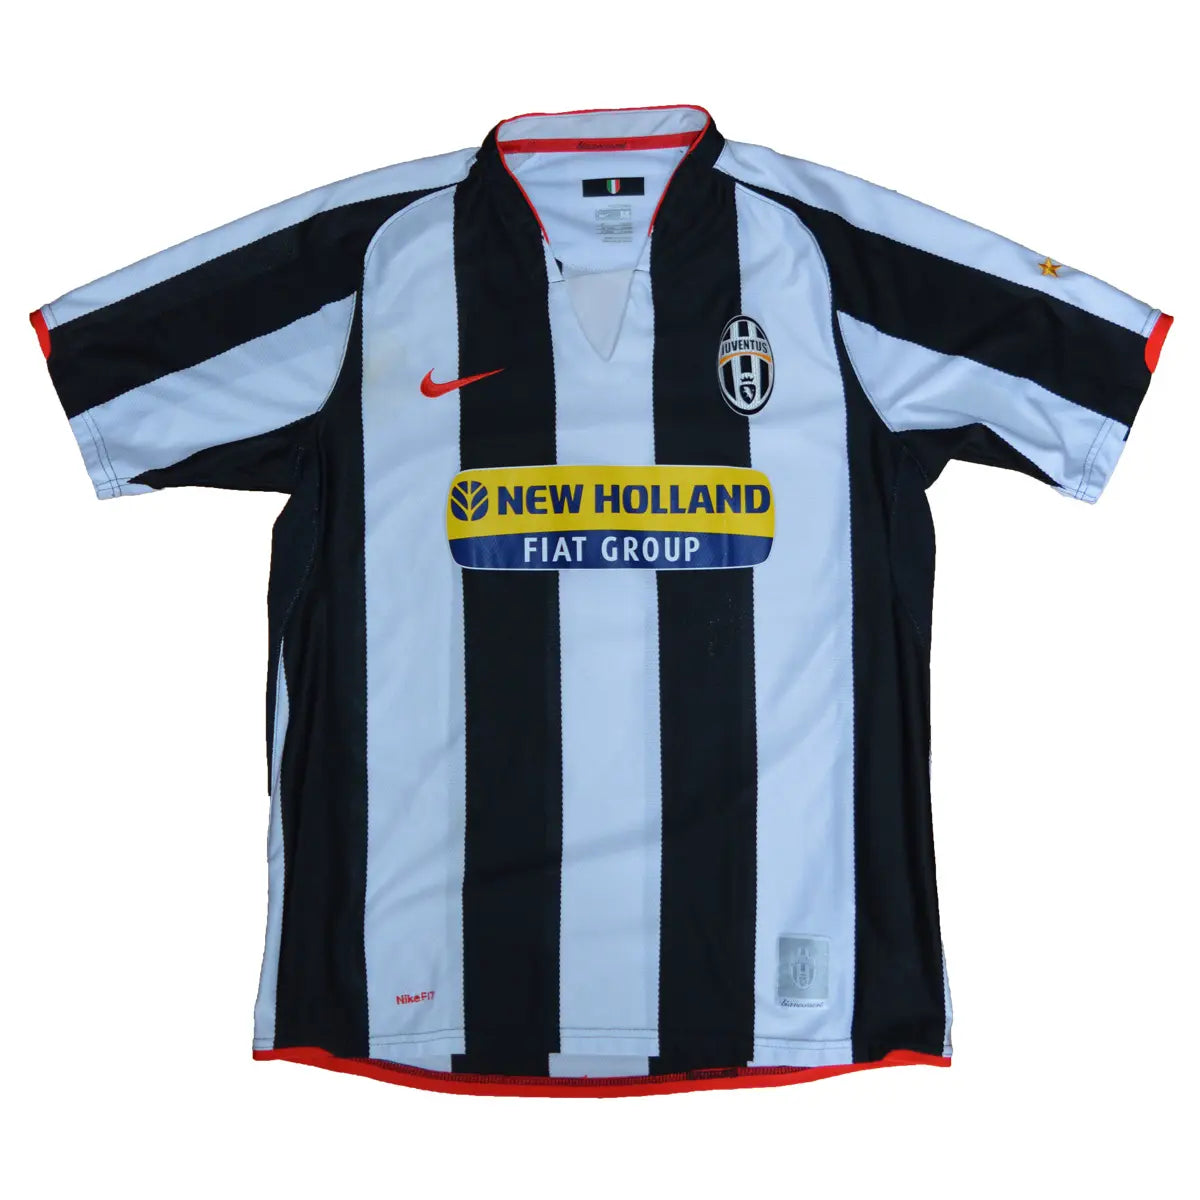 Maillot de foot rétro/vintage authentique blanc et noir nike Juventus domicile 2007-2008 Del Piero